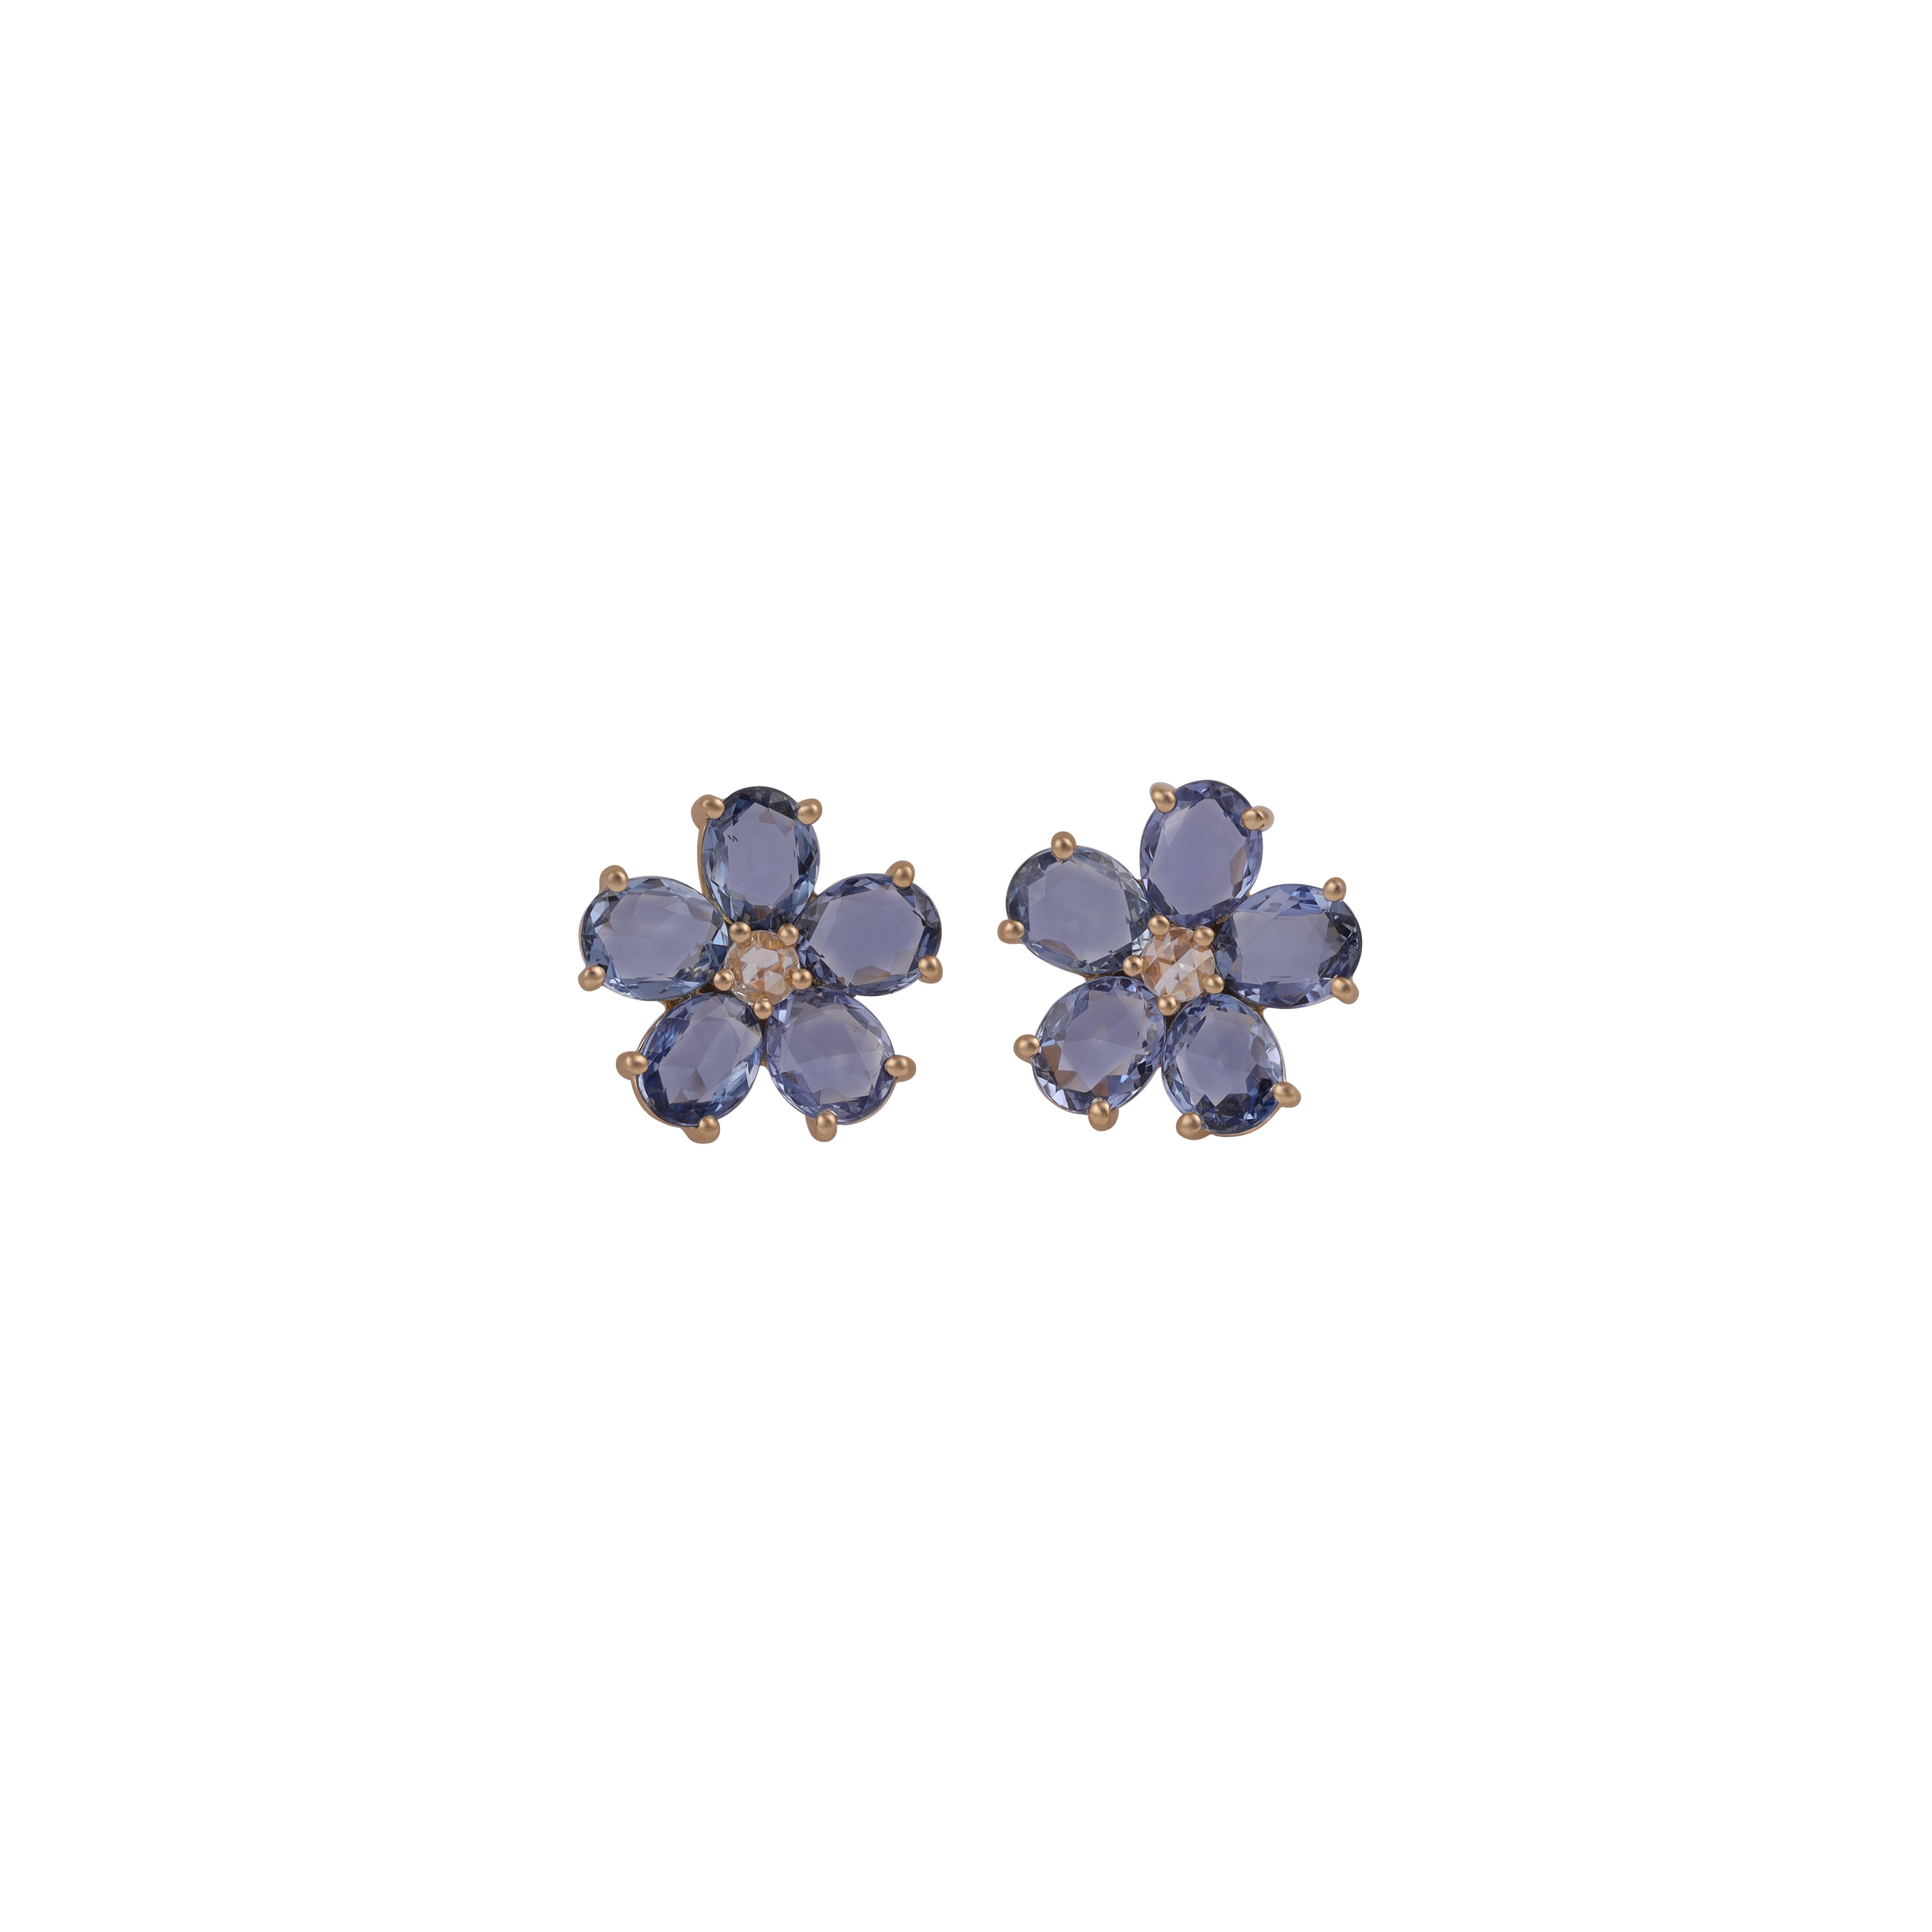 Oval Cut Blue Sapphire & Diamond Earrings Studded in 18k Yellow Gold